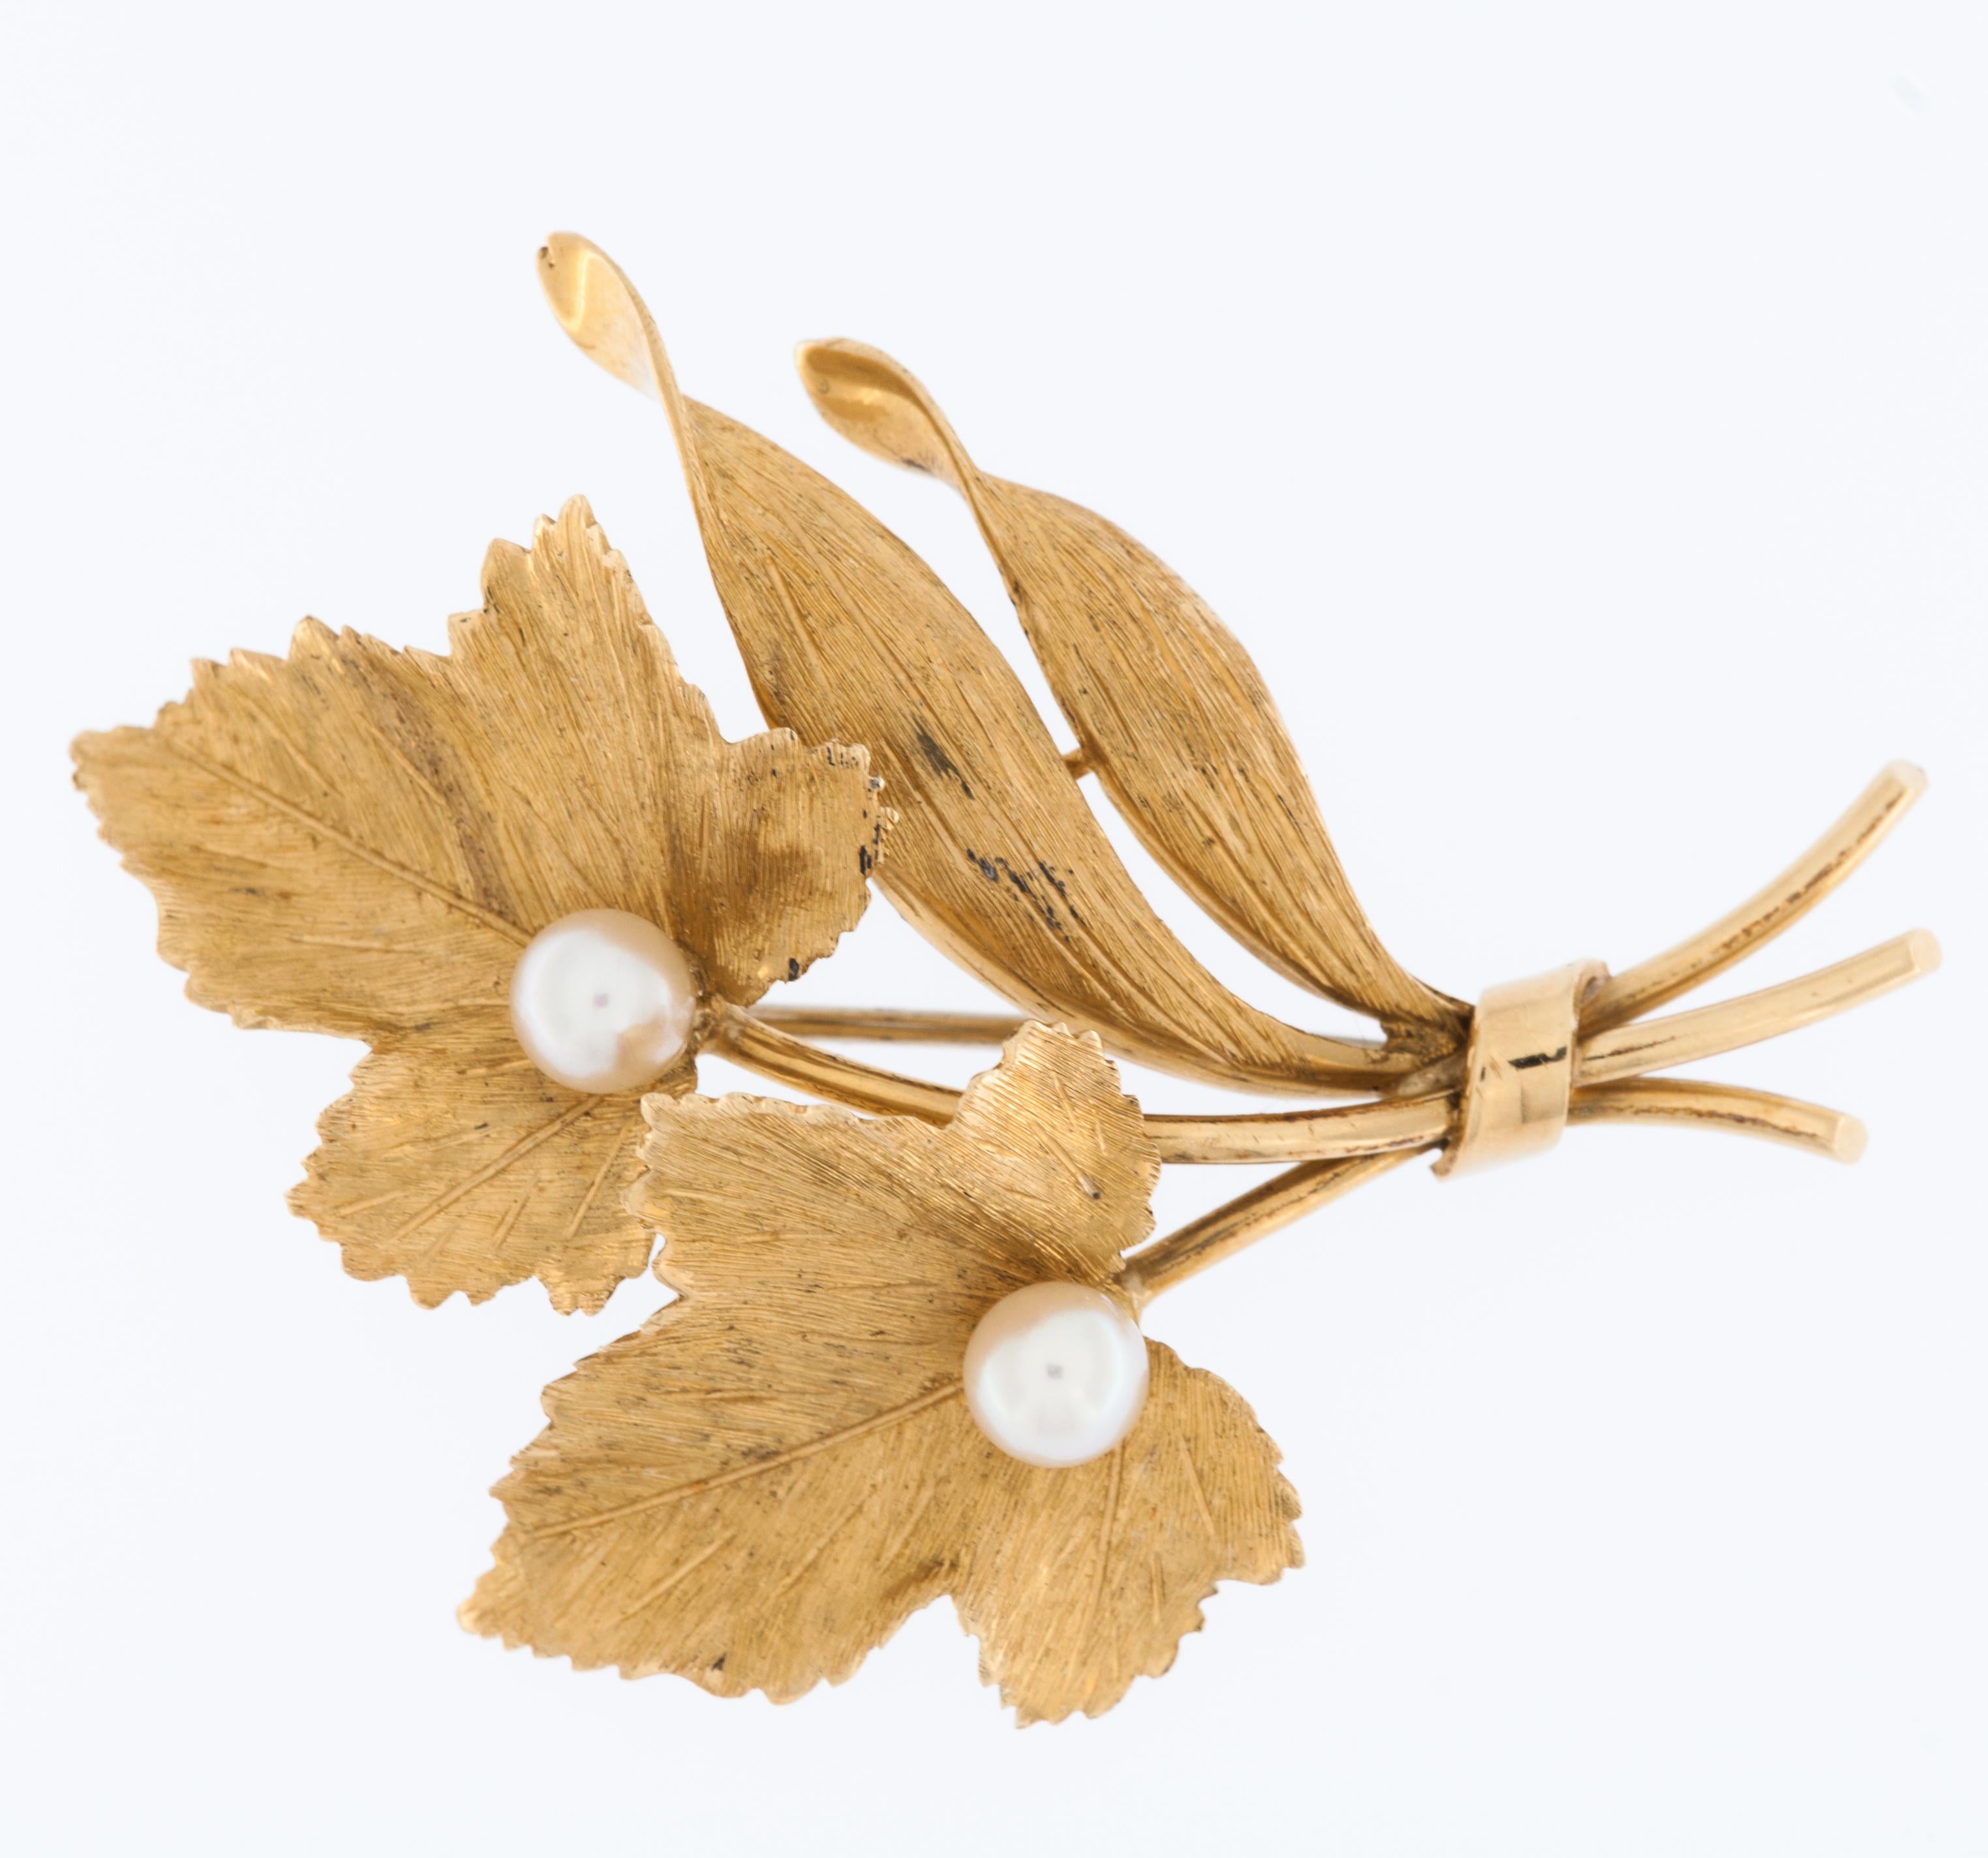 Die Retro 18kt Yellow Gold Vineyard Leaf Brooch with Pearls ist ein exquisites Schmuckstück, das die Designästhetik der Retro-Ära widerspiegelt, die sich typischerweise auf die Zeit zwischen den 1930er und 1950er Jahren bezieht. 

Die aus